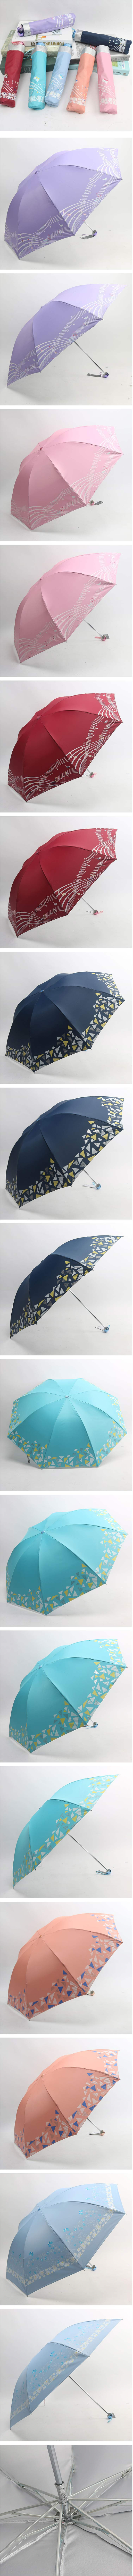 【精选优惠】仅售23.8元包邮！天堂伞17336T银丝印晴雨伞 男女便携式太阳伞折叠雨伞 正品包邮！